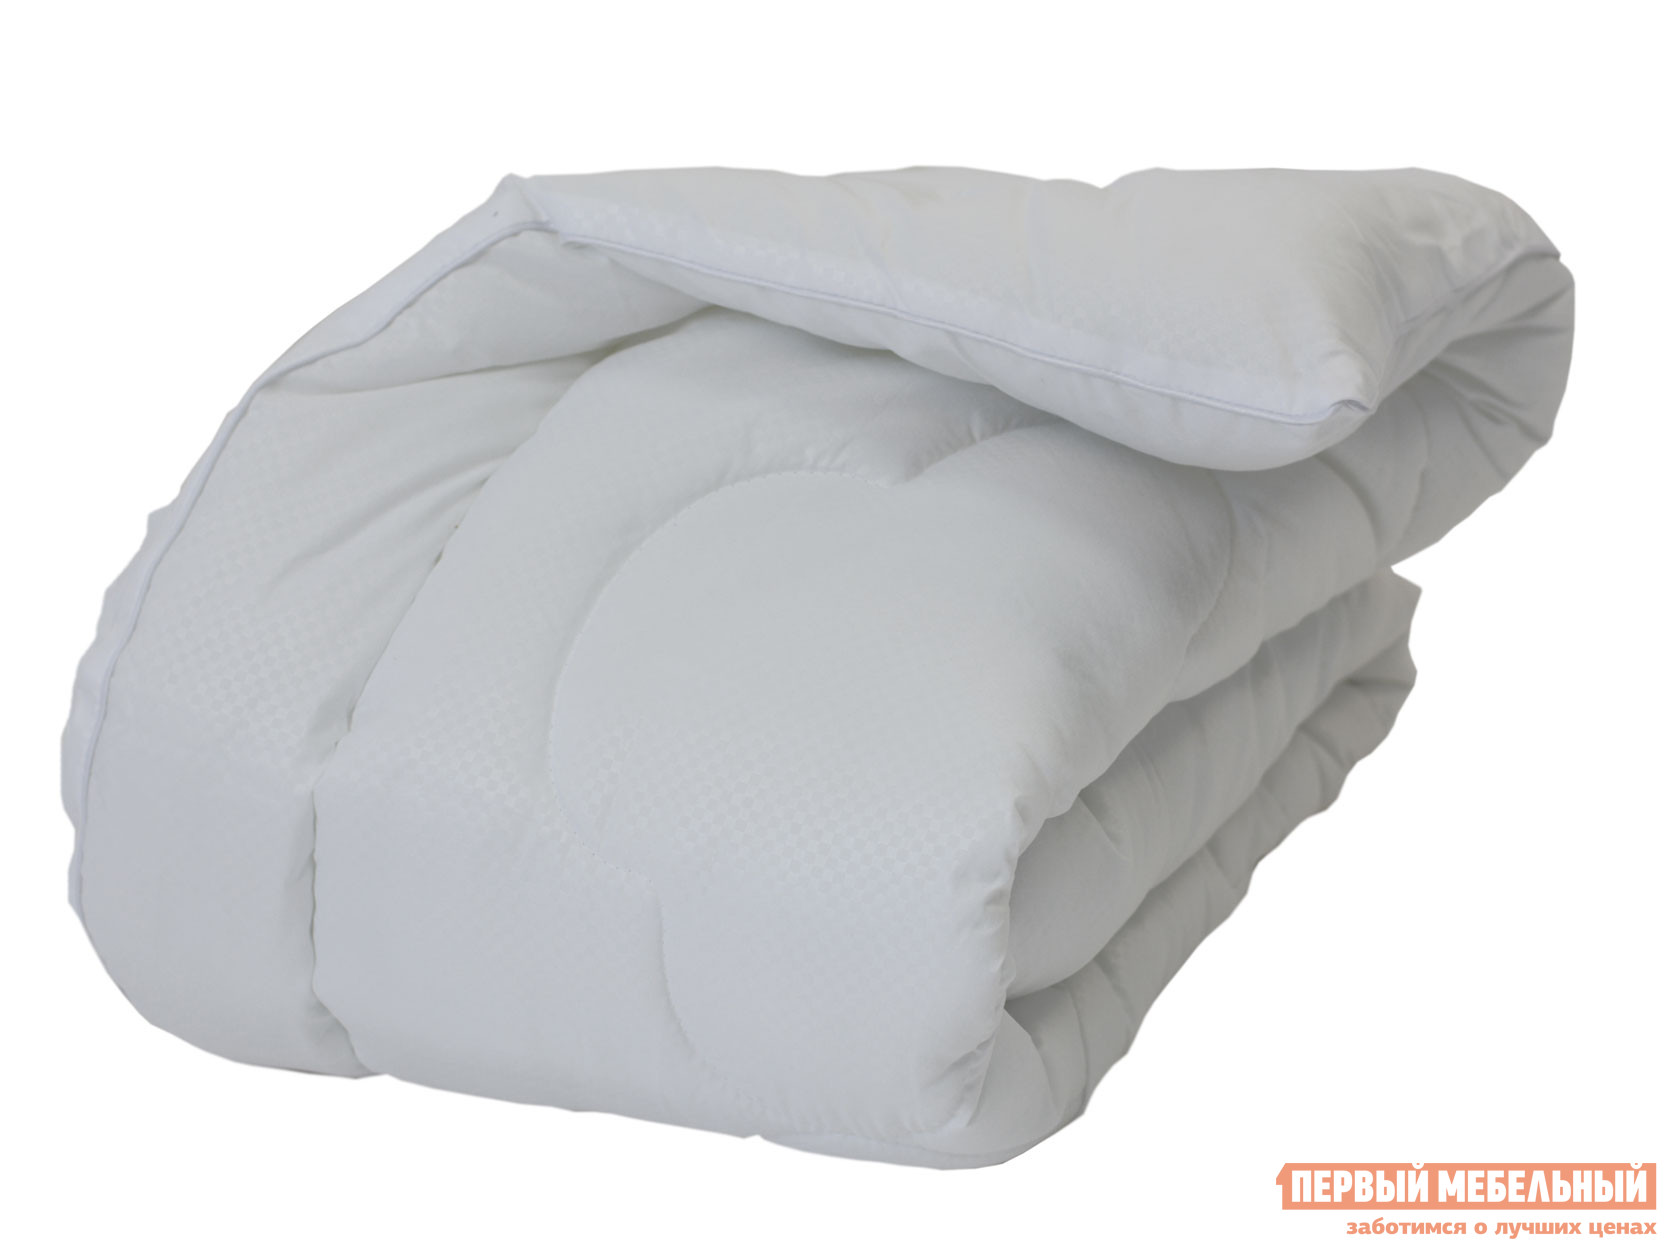 Одеяло  Бамбук Комфорт всесезонное Белый, 2000 х 2200 мм от Первый Мебельный